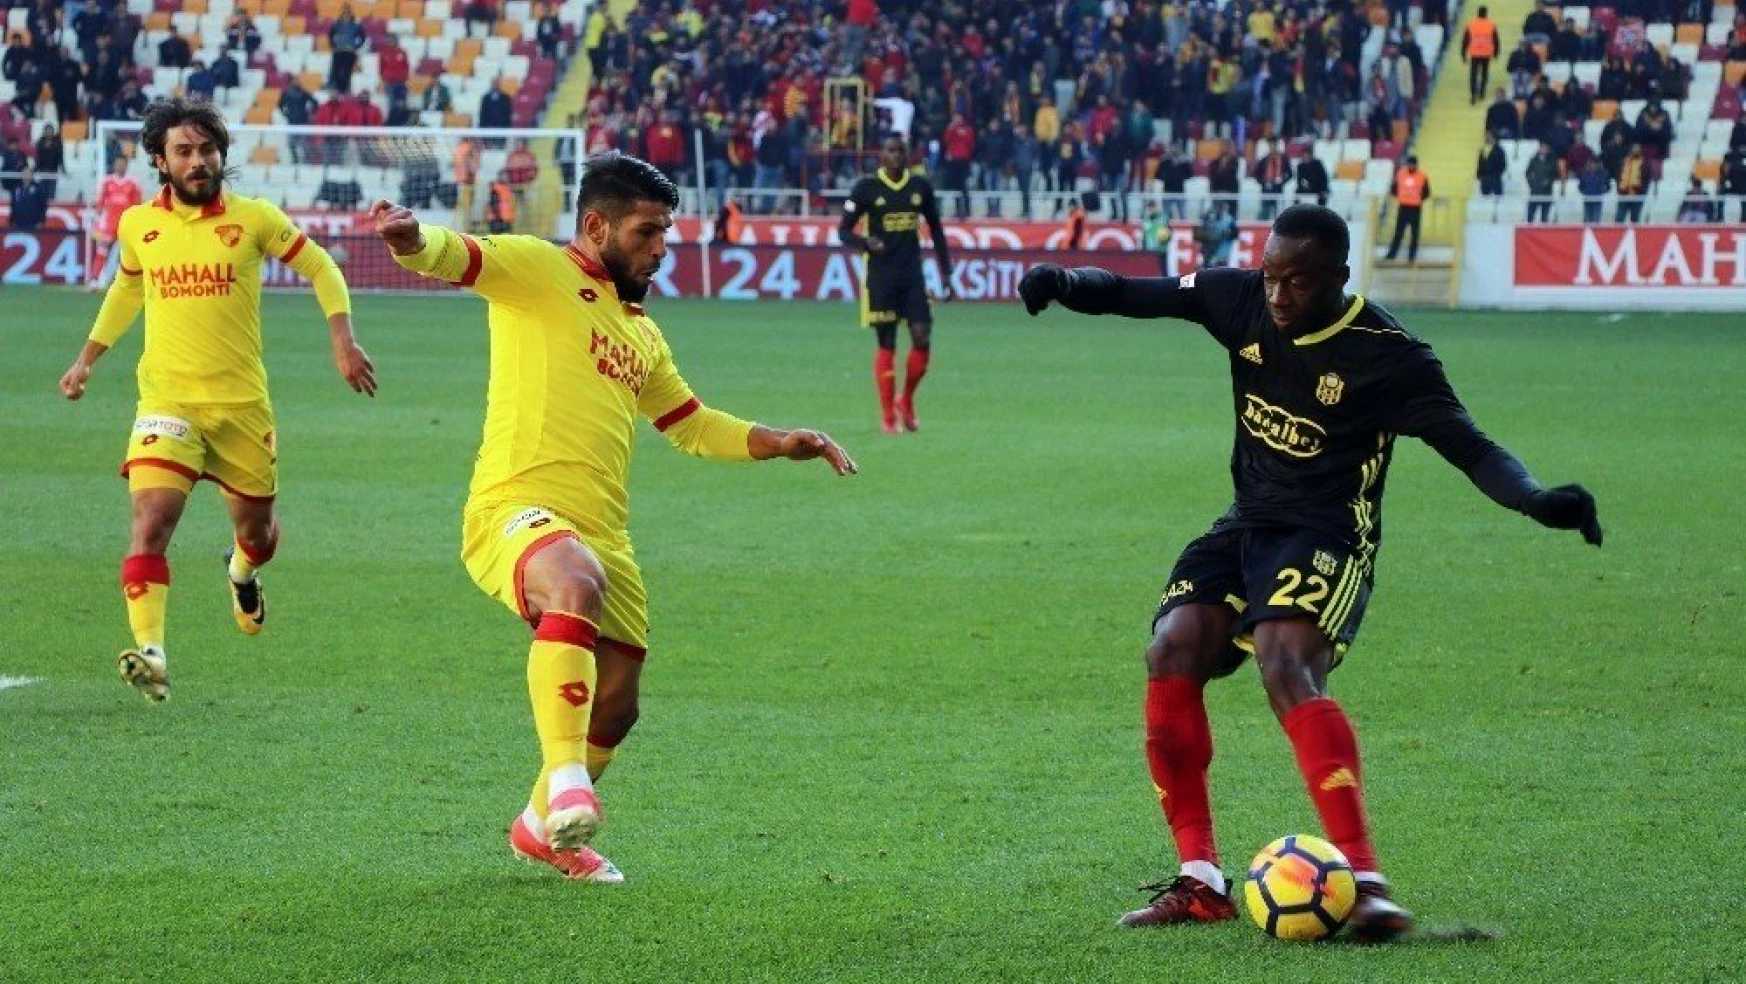 Süper Lig: Evkur Yeni Malatyaspor: 2 - Göztepe: 3 (Maç sonucu)
